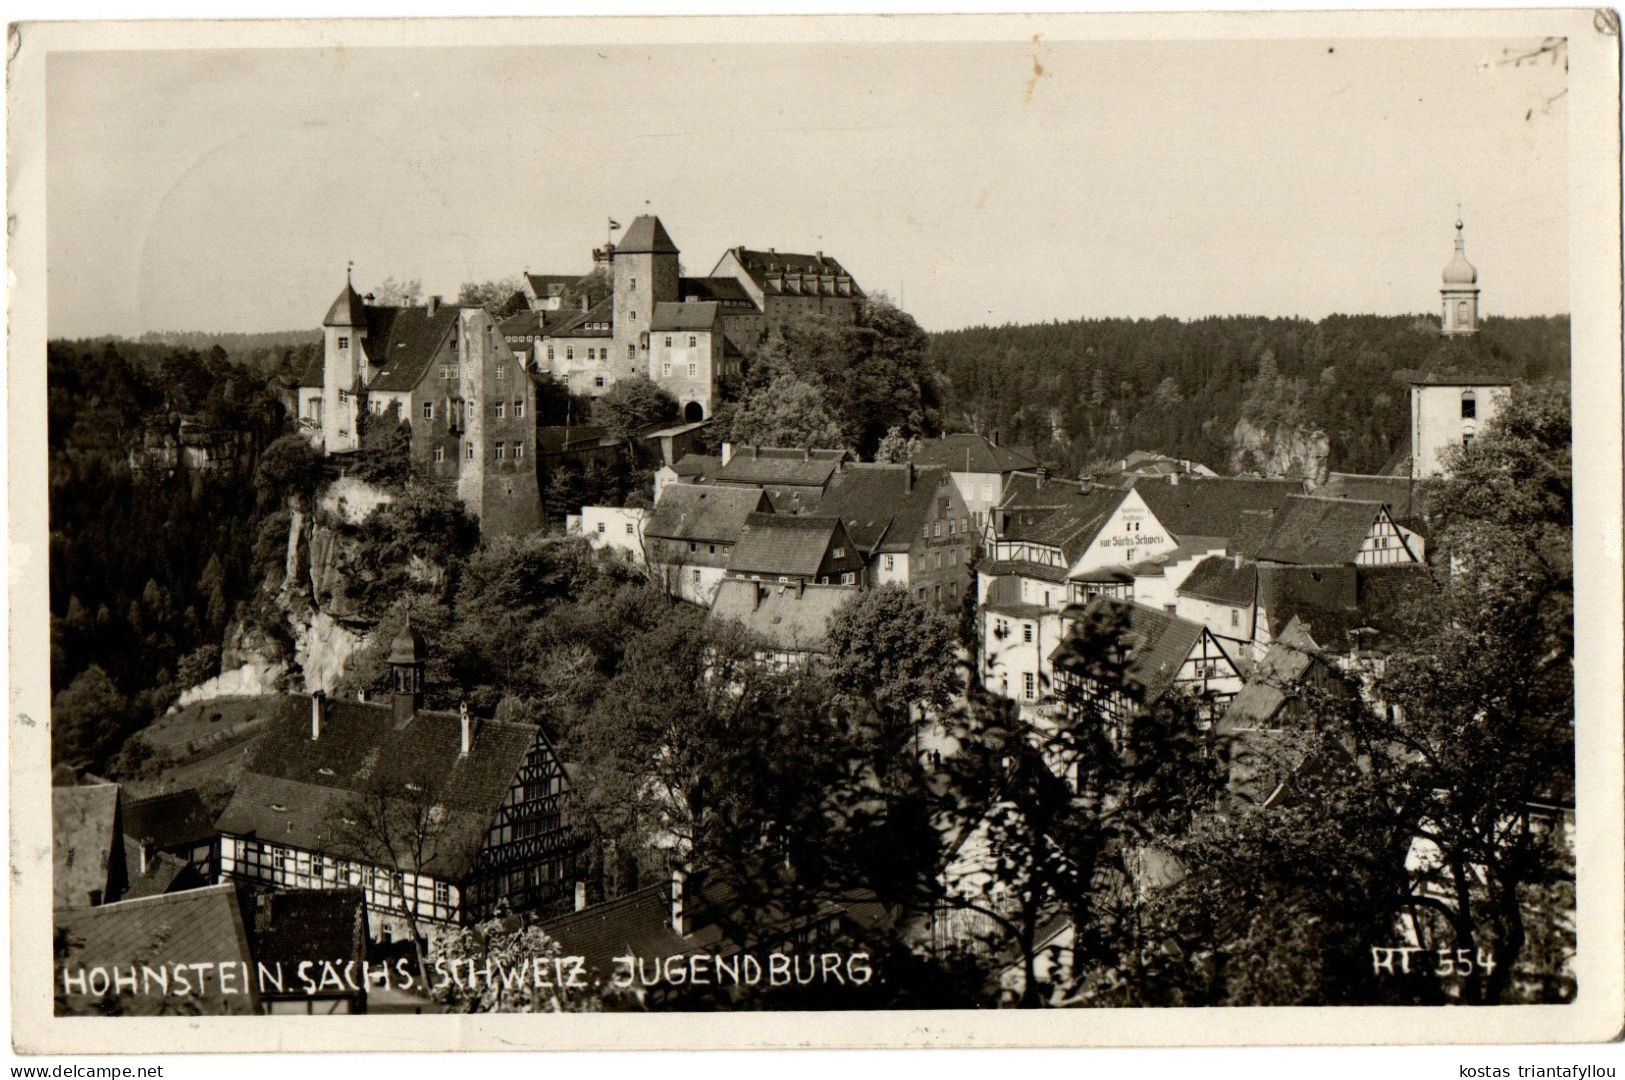 1.12.25 GERMANY, HOHNSTEIN, JUGENDBURG, PHOTOGRAPH, 1937, POSTCARD - Hohnstein (Sächs. Schweiz)